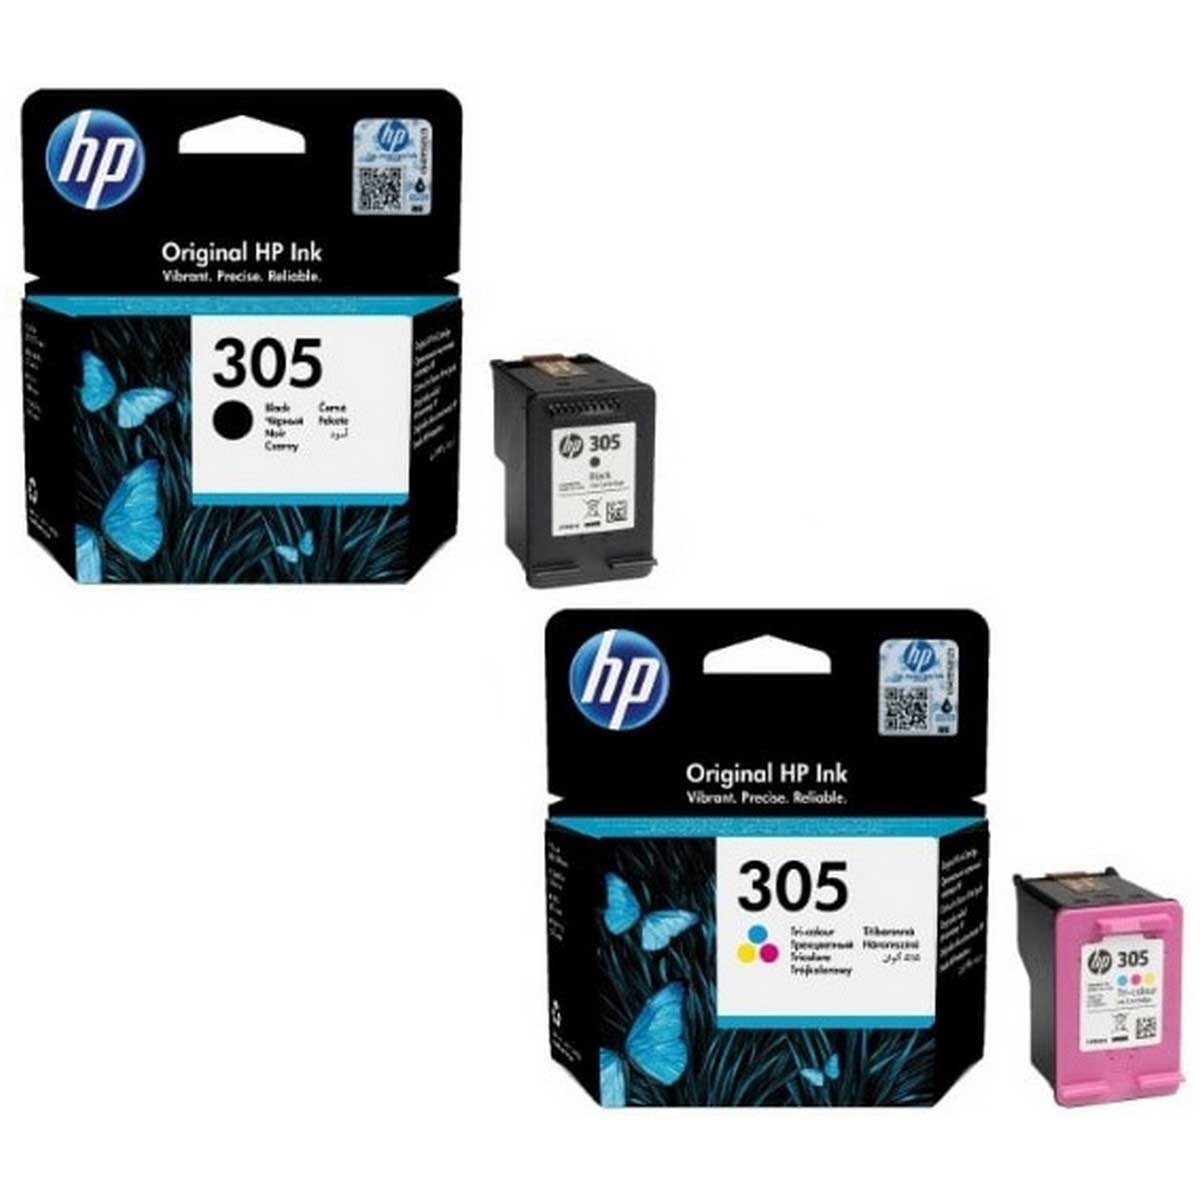 HP 305 Black And Tri-Colors Original Ink Cartridge Combo Pack.